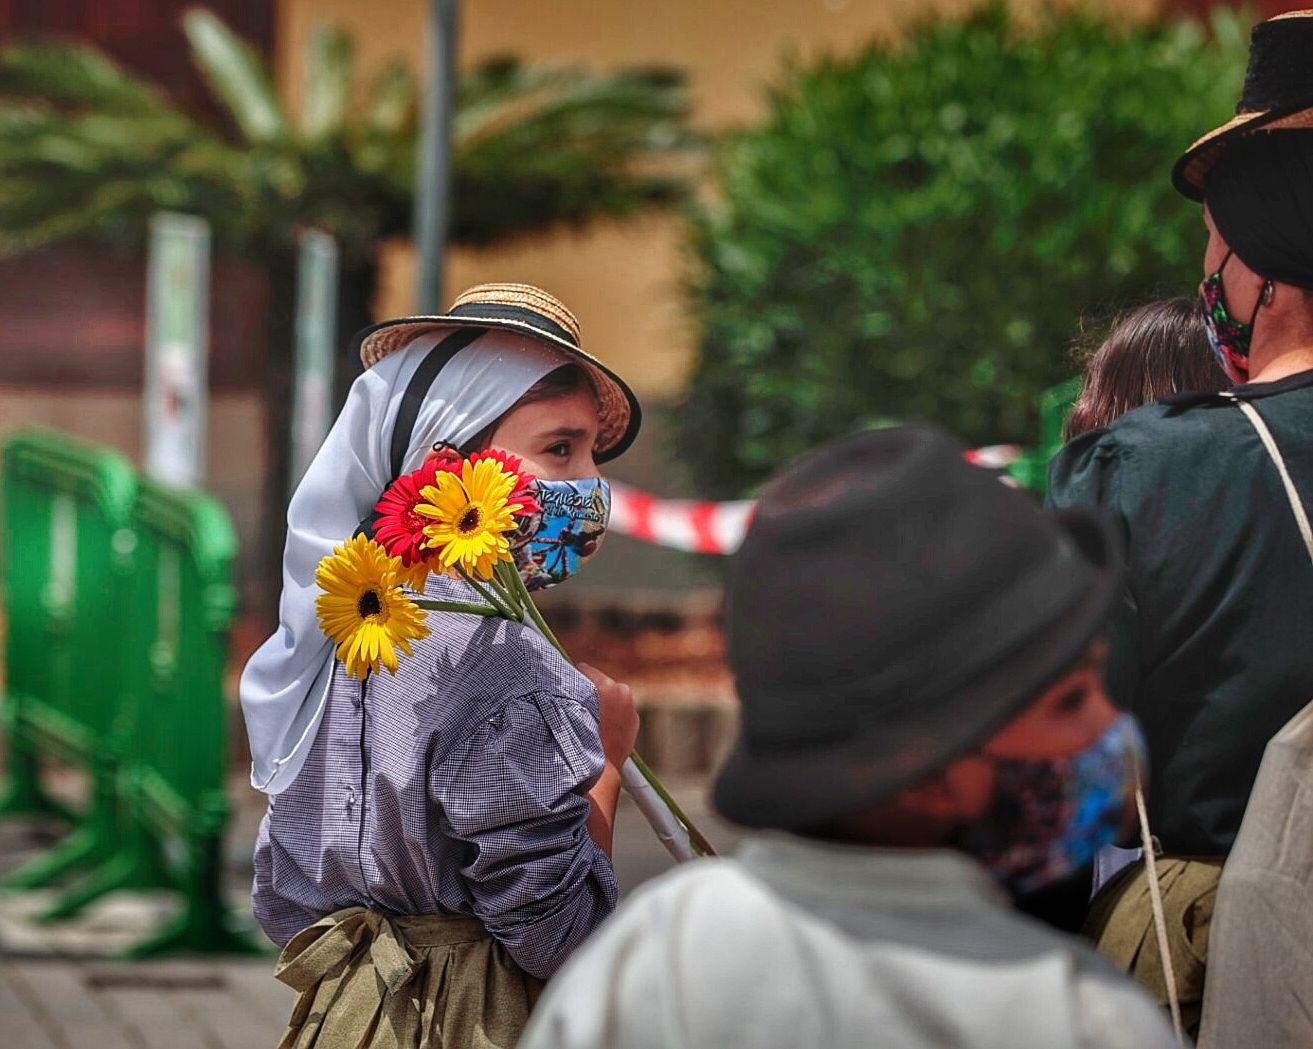 Fiestas de San Marcos en Tegueste